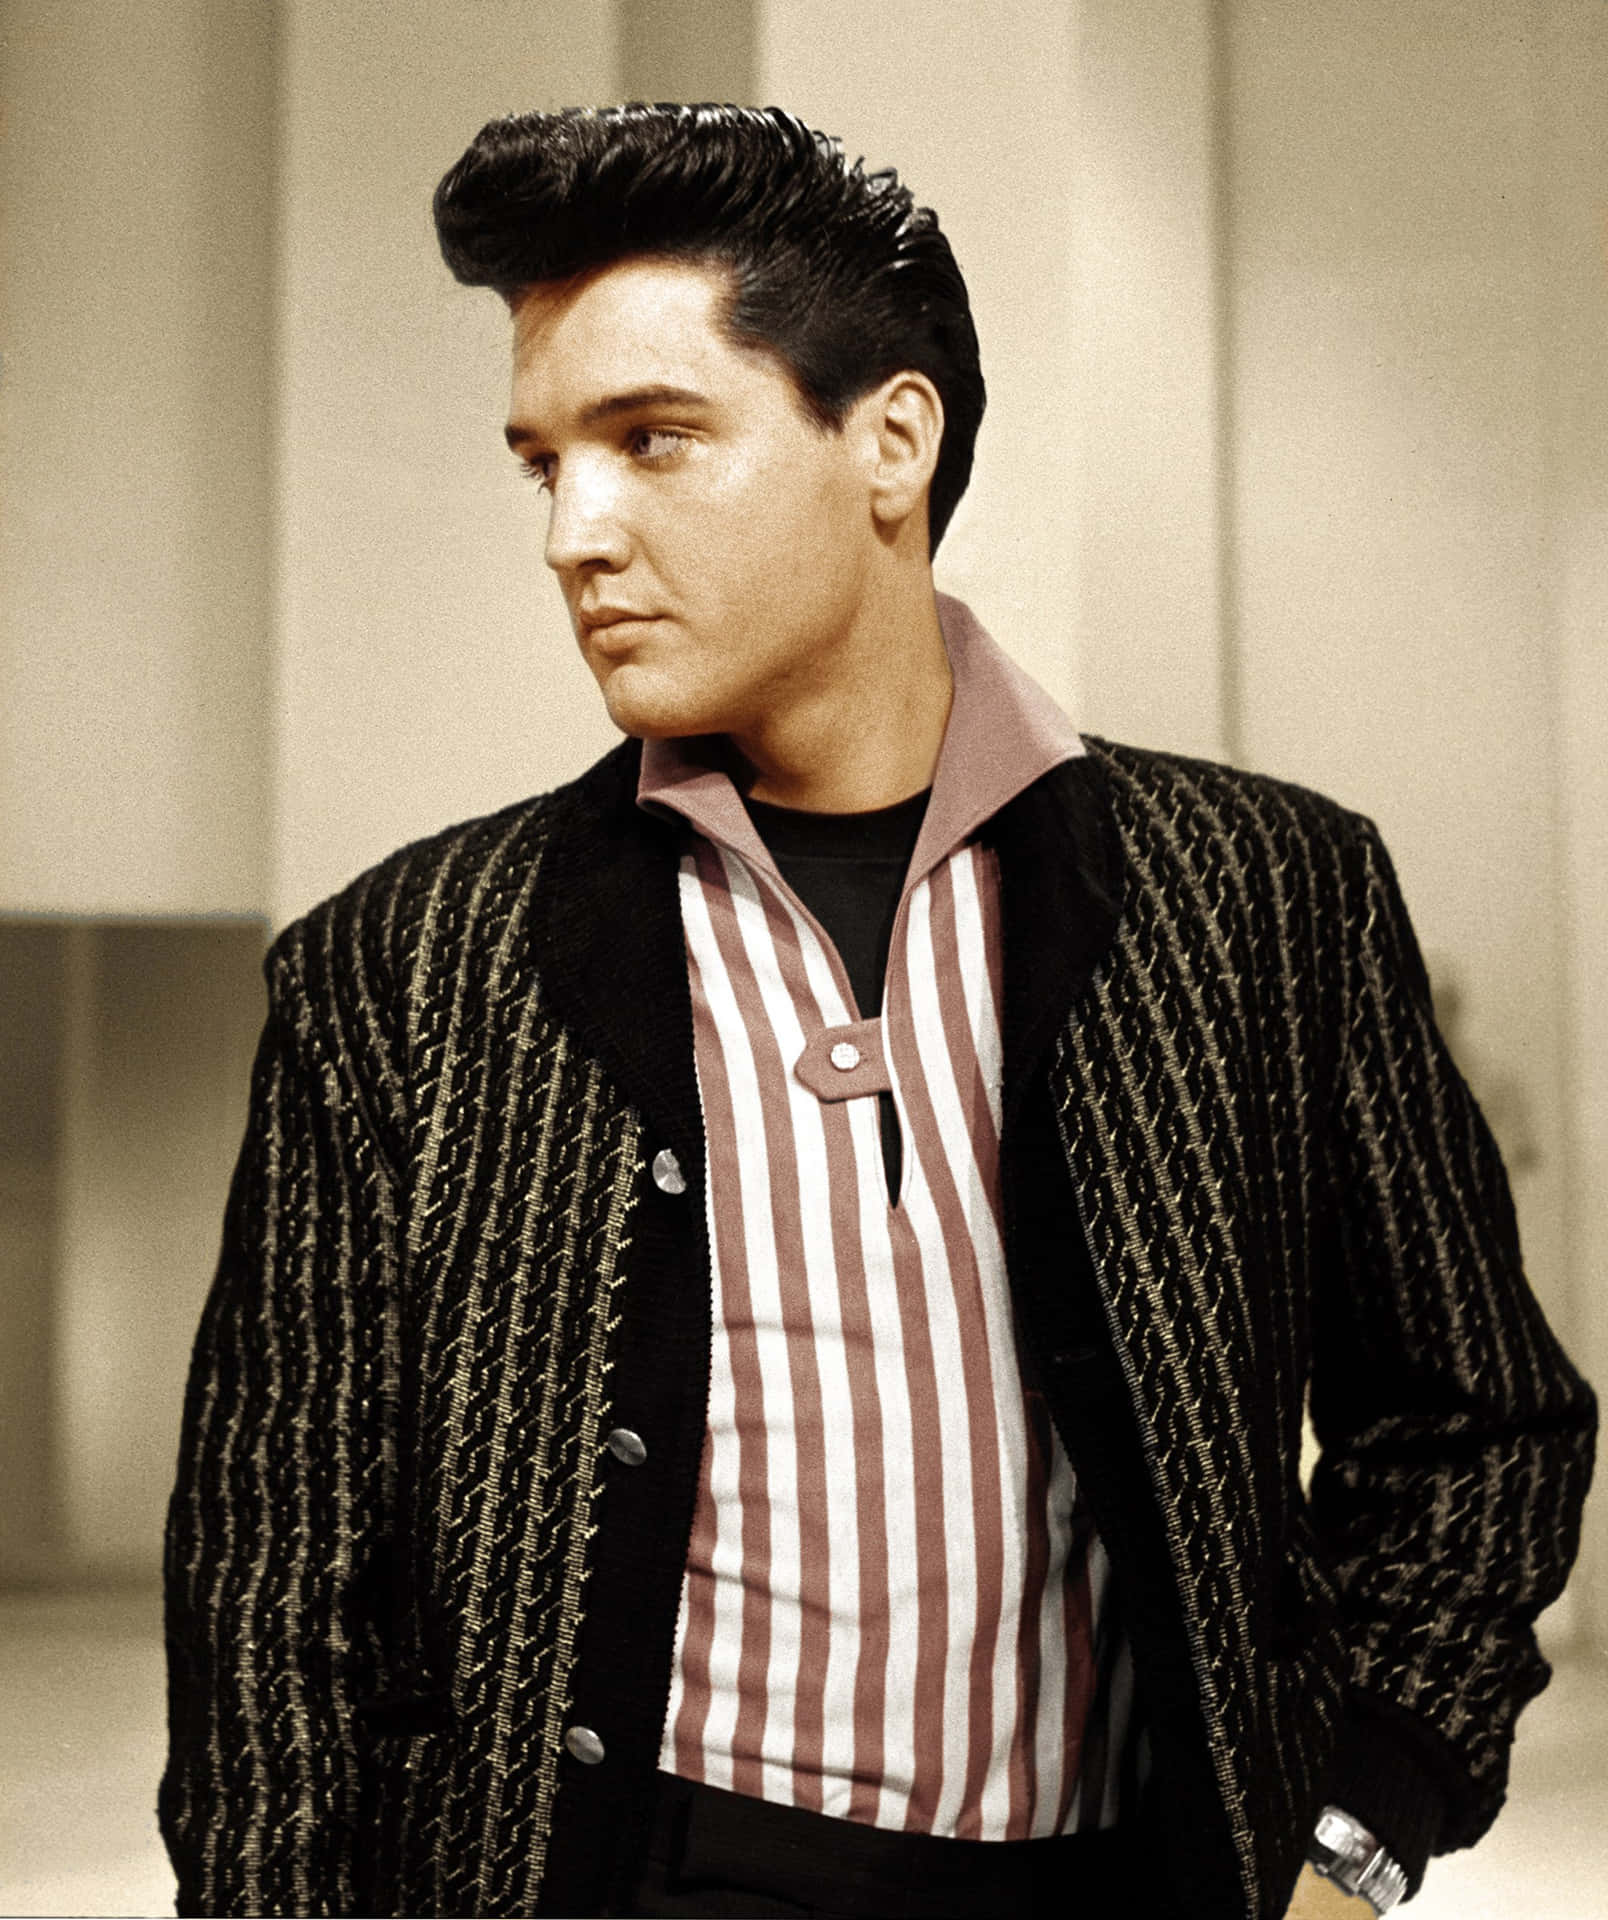 Kungenav Rock 'n' Roll, Elvis Presley